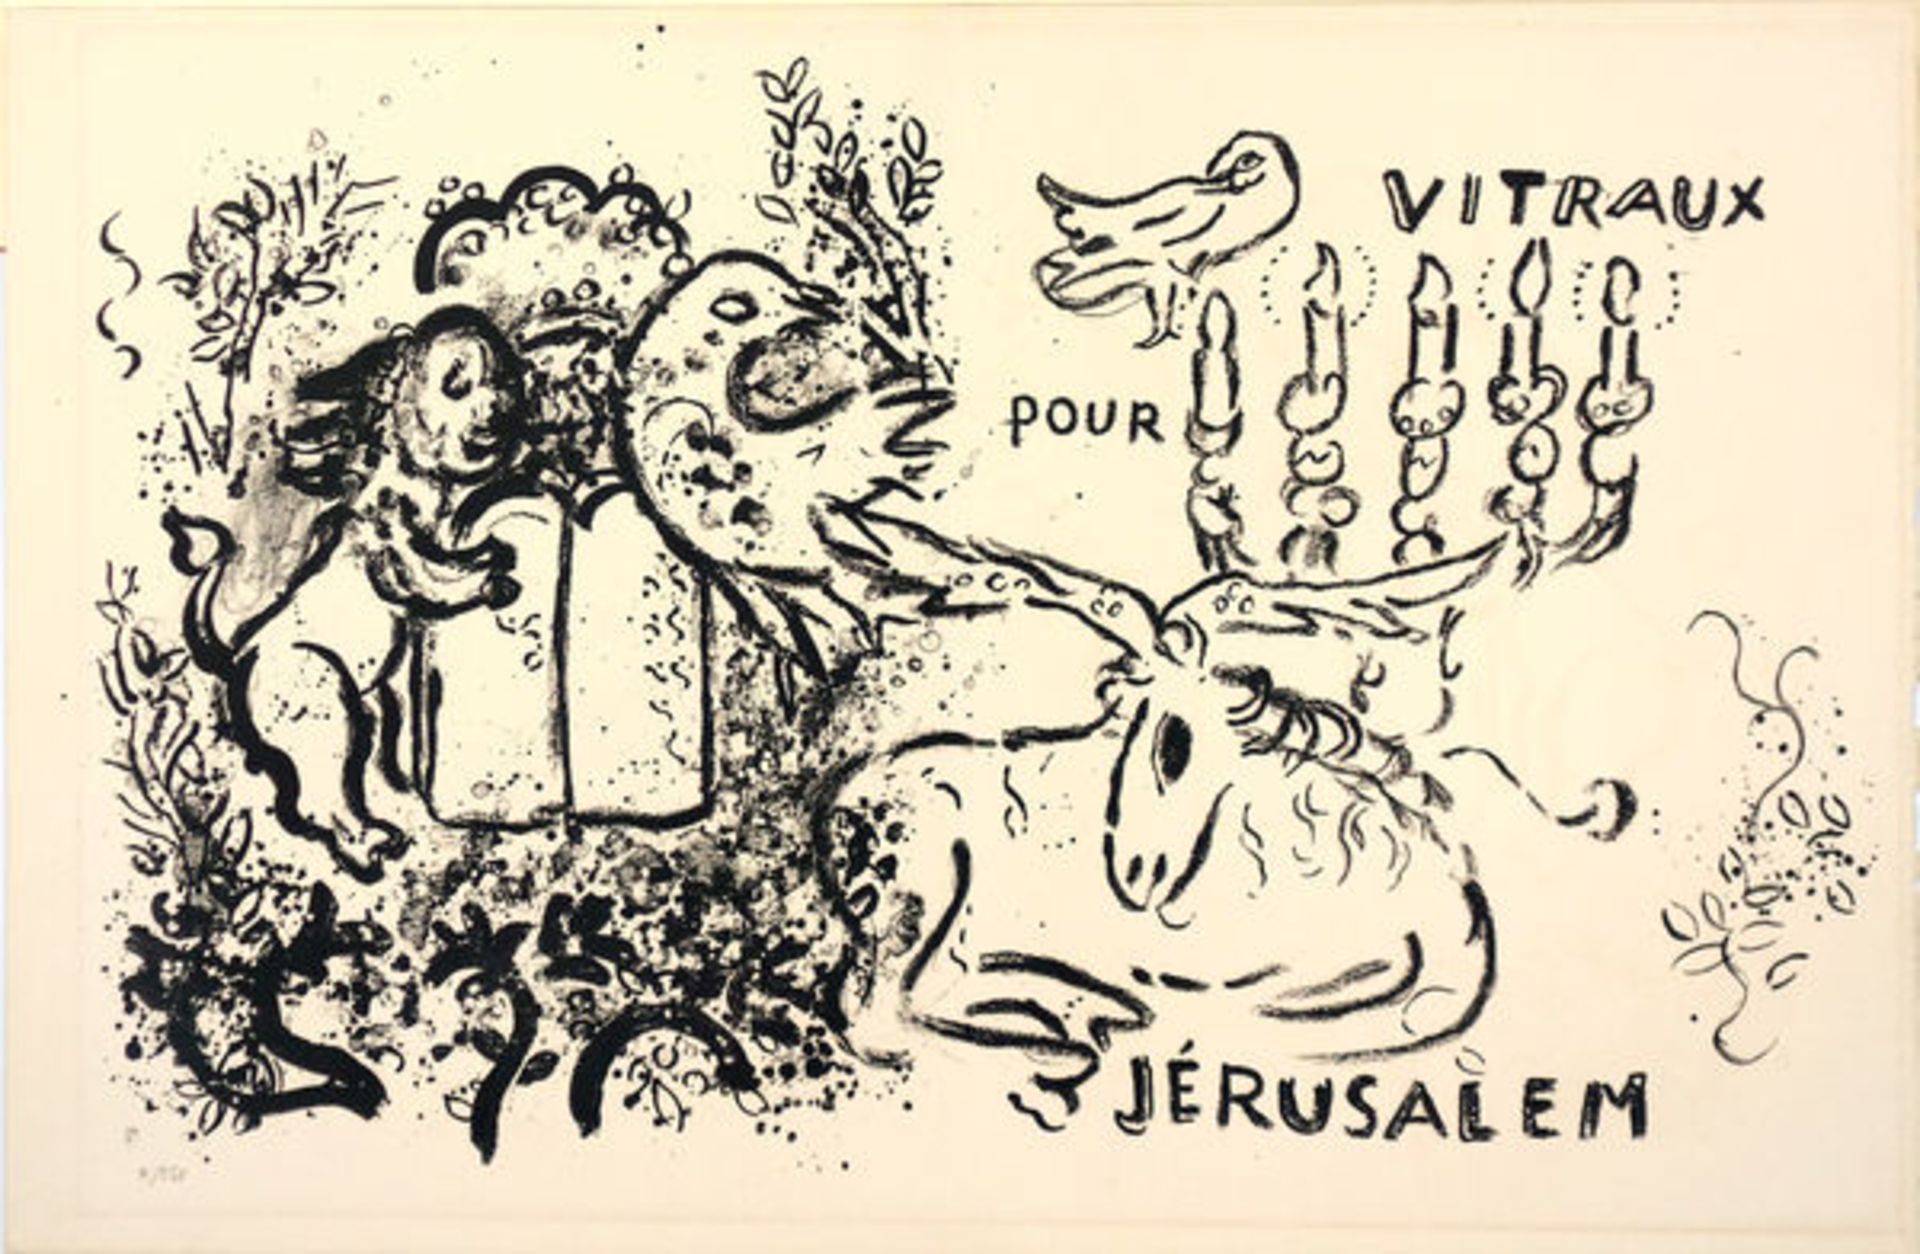 Chagall, Marc Lithographie in Schwarz auf Bütten mit Mittelfalz, 32,5 x 51,5 cm Titelblatt und